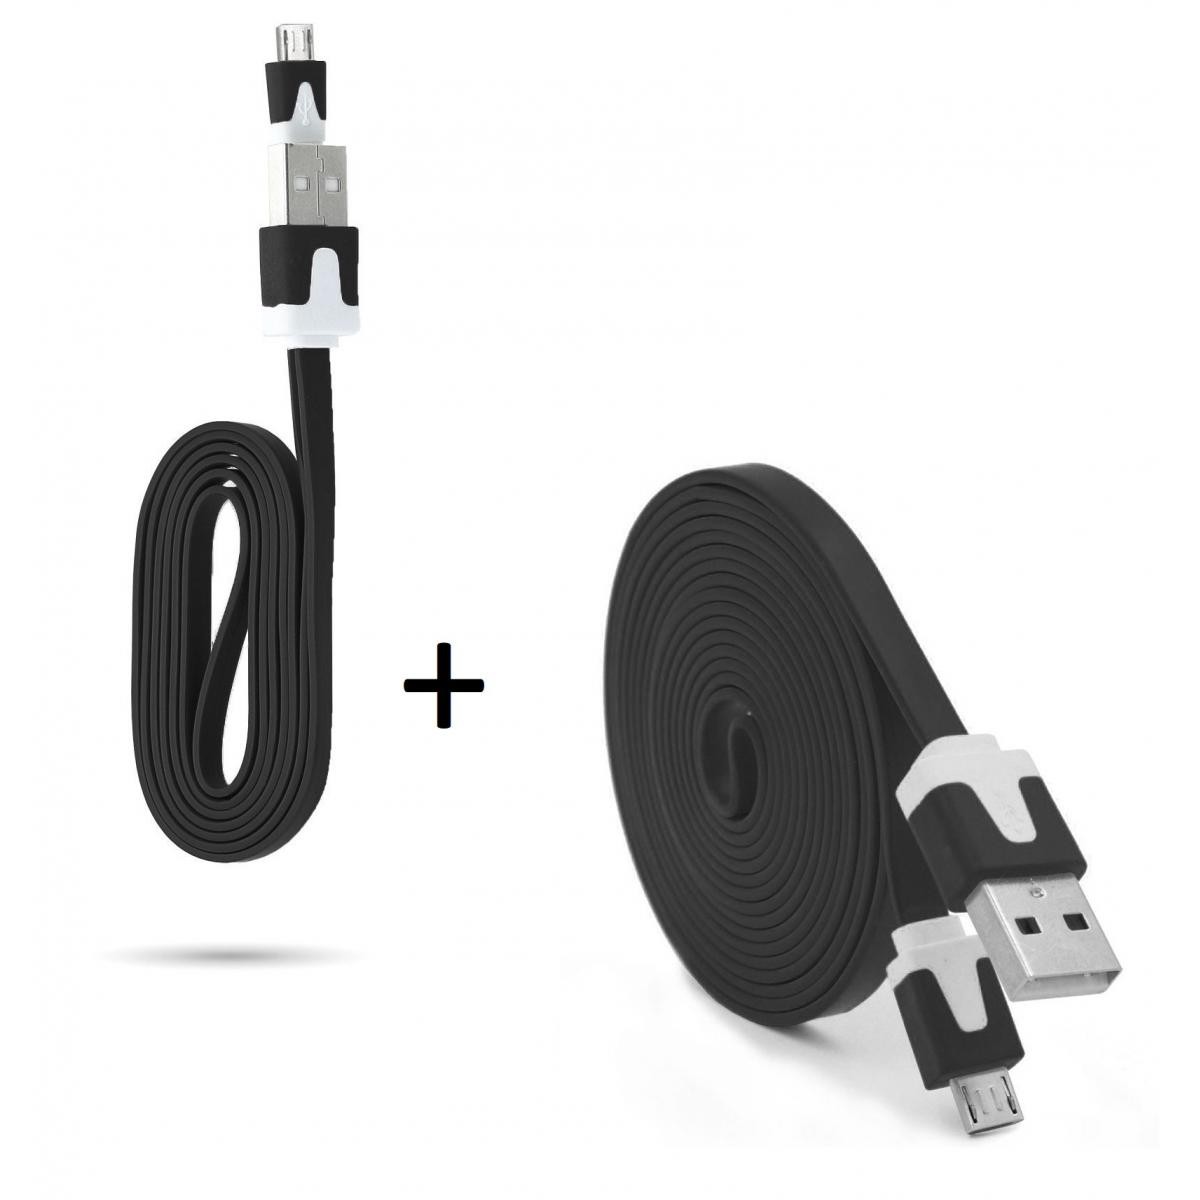 Shot - Pack Chargeur pour "XIAOMI Redmi 9C" Smartphone Micro USB (Cable Noodle 3m + Cable Noodle 1m) Android (NOIR) - Chargeur secteur téléphone